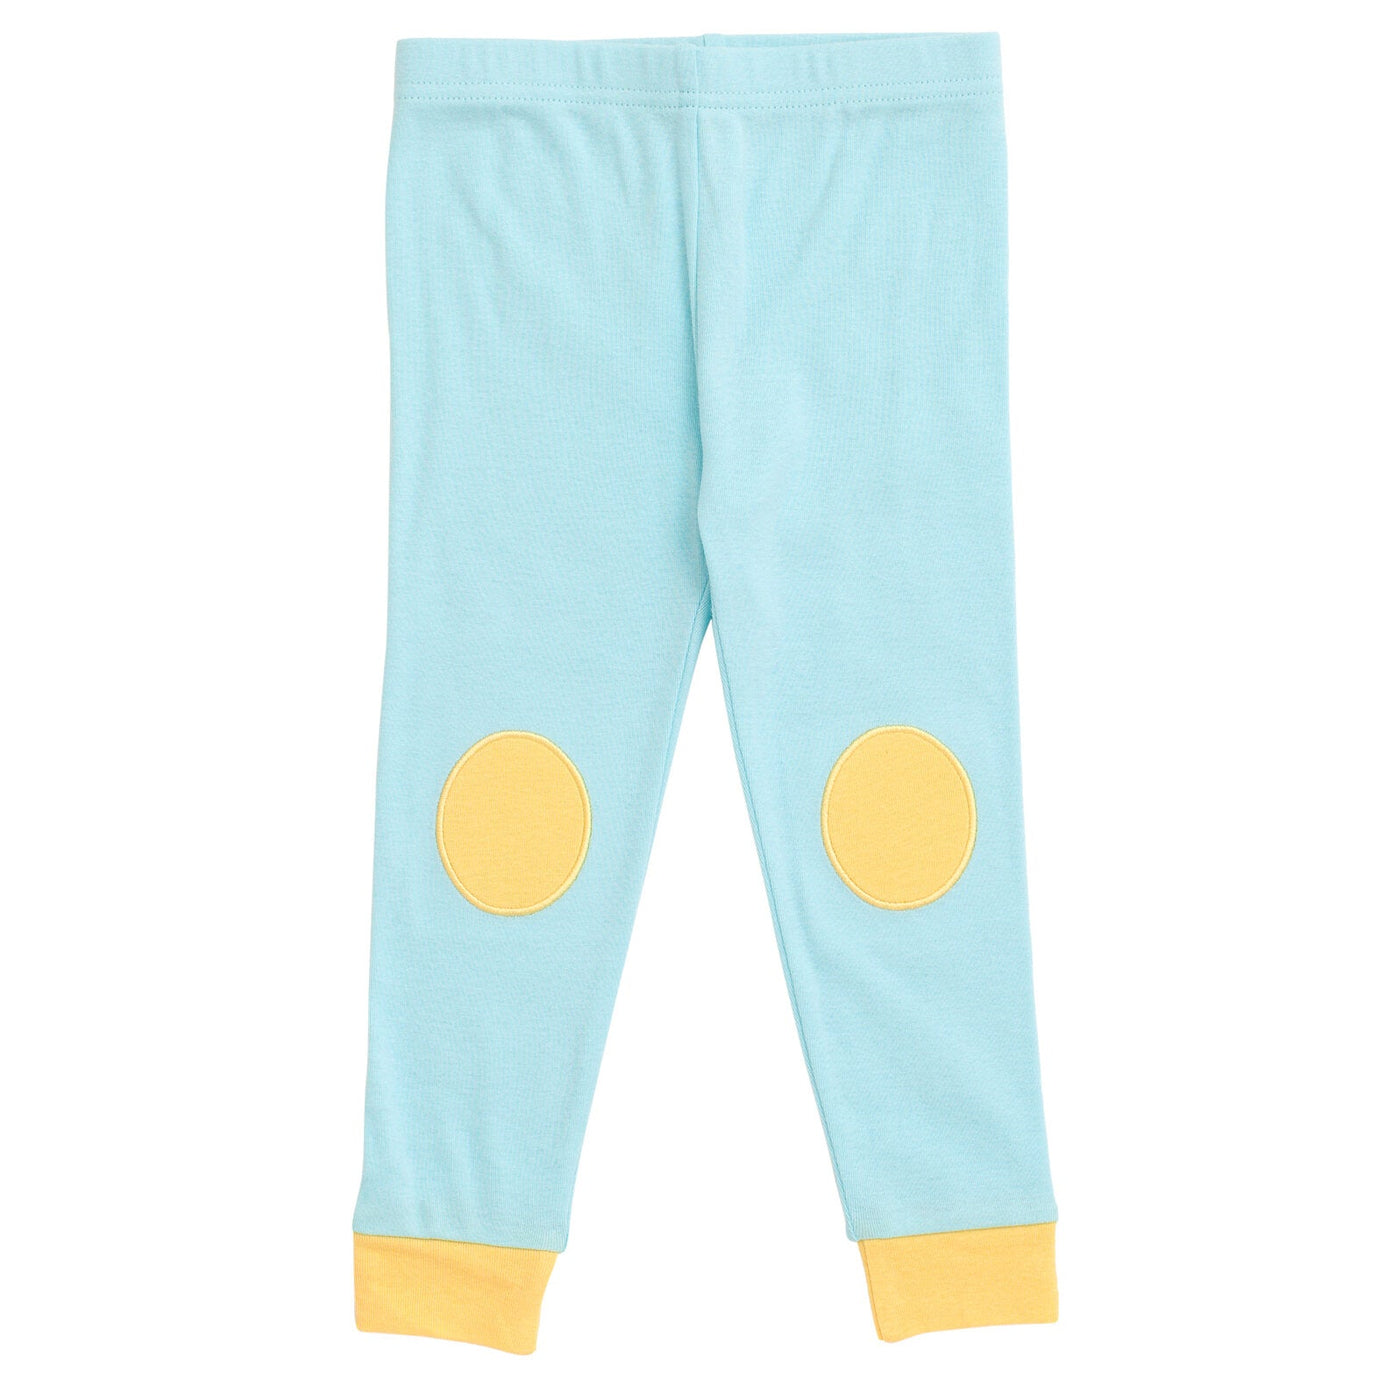 Care Bears Pajama Shirt and Pants Sleep Set - imagikids